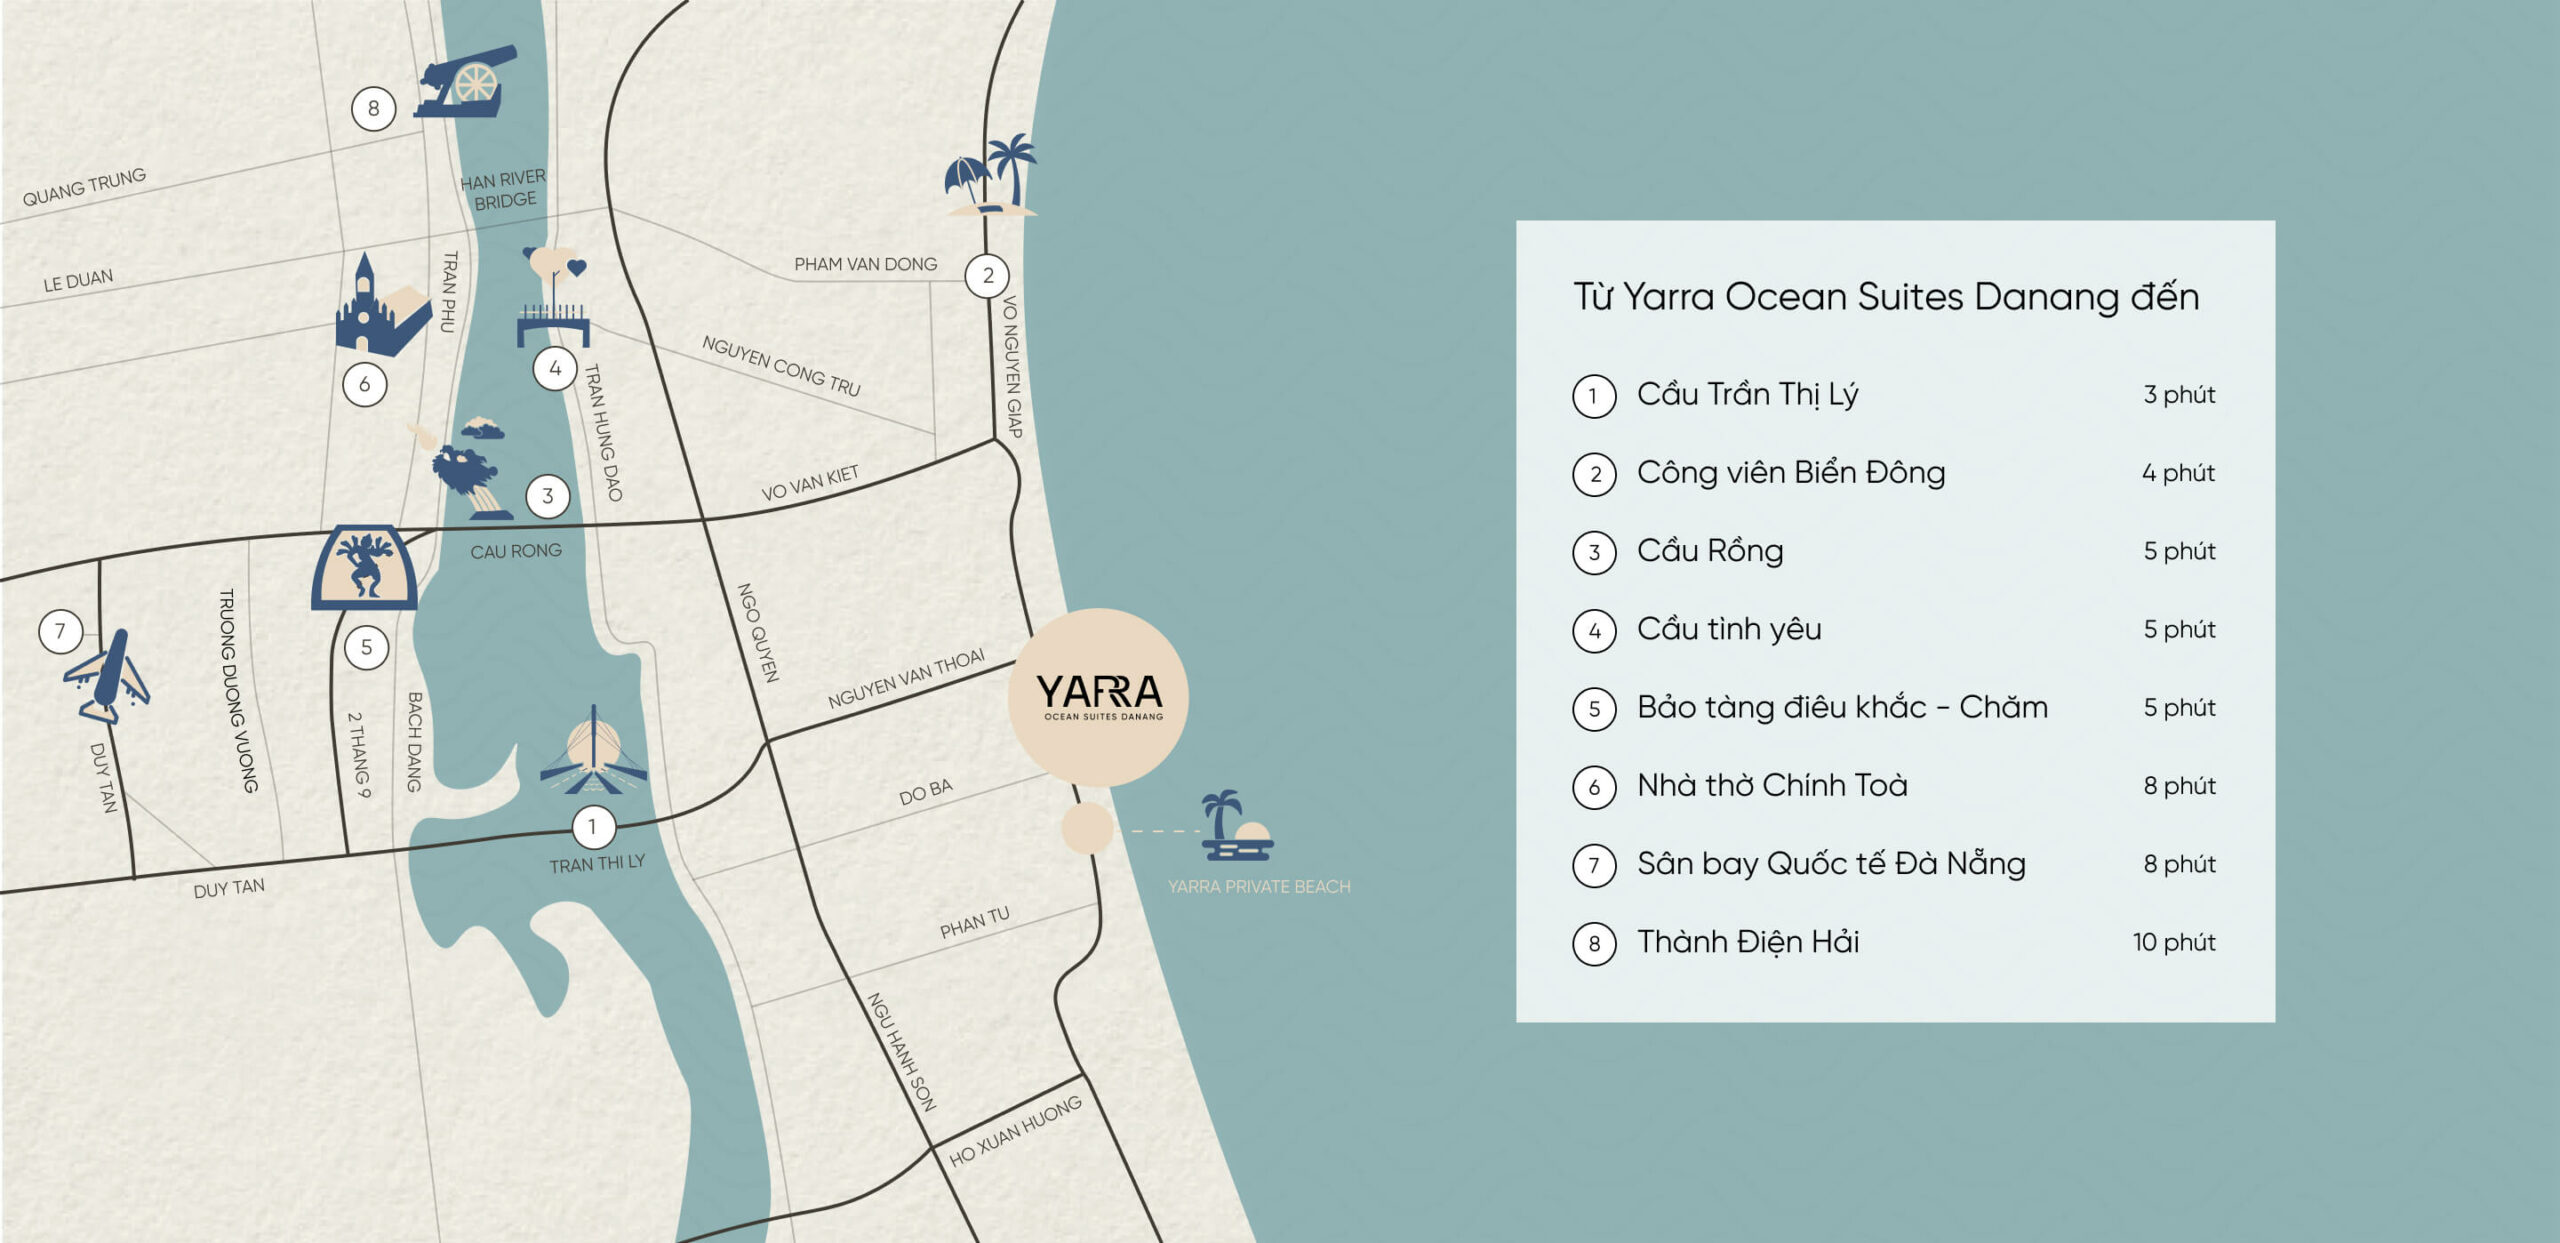 Yarra Ocean Suites Da Nang